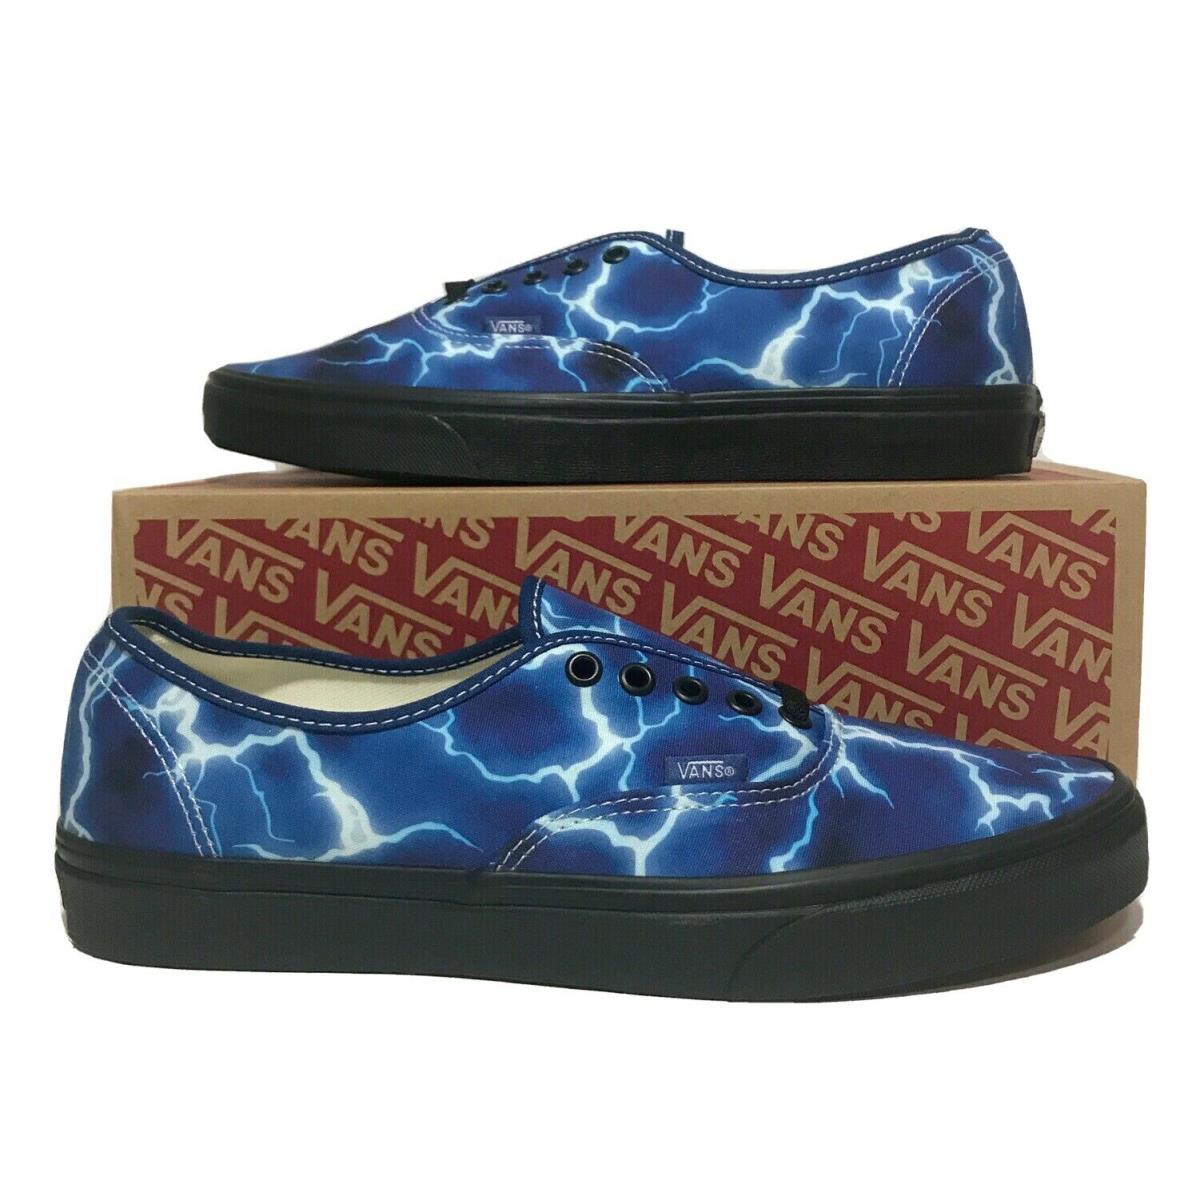 Vans Lightning Style Mens Size 9 Sneaker Blue Shoes Skateboarding